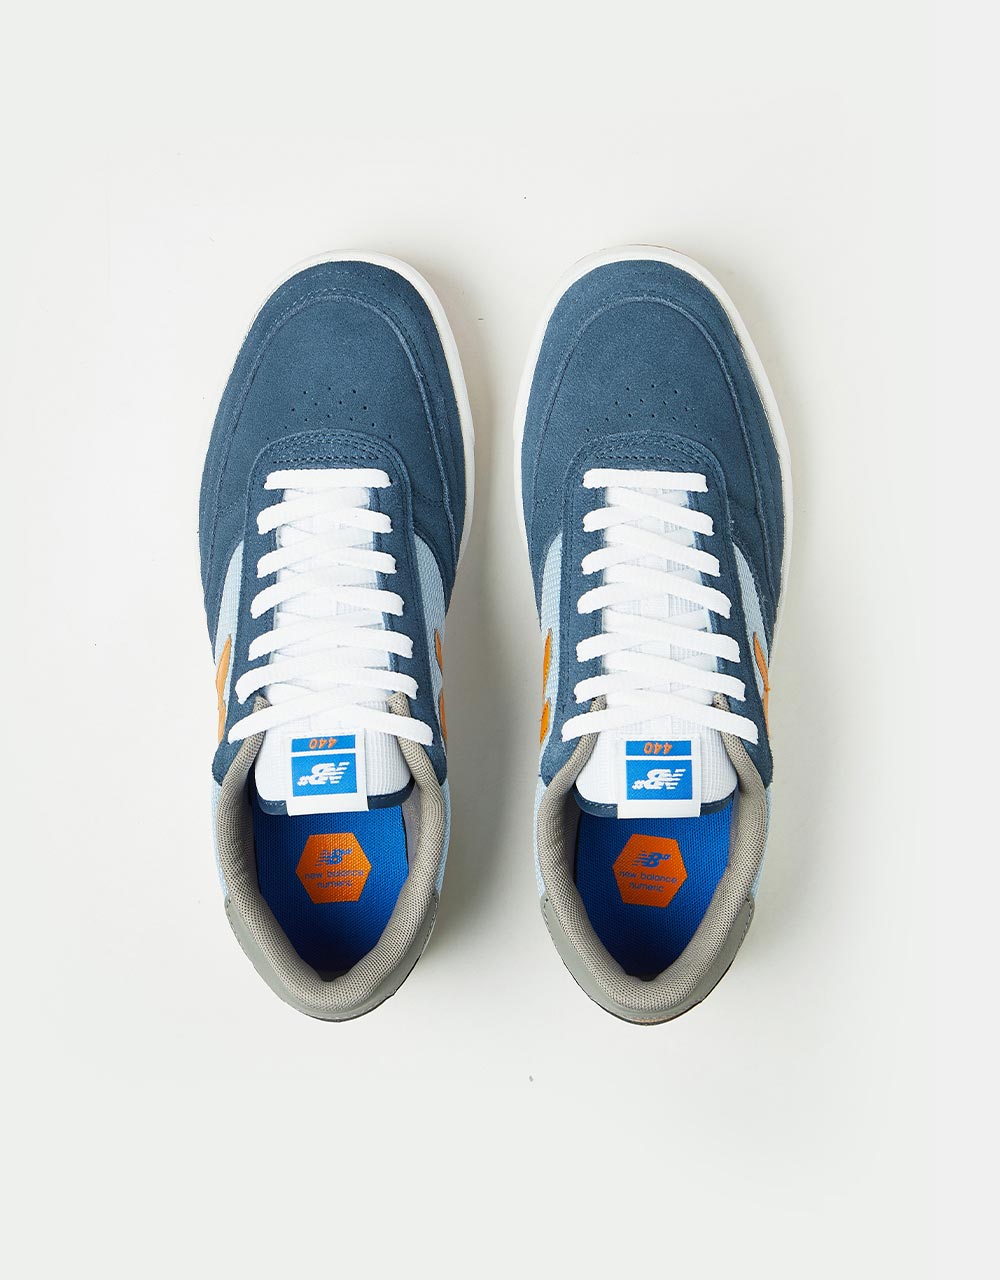 New Balance Numeric 440 Skate Shoes - Slate Blue/Orange